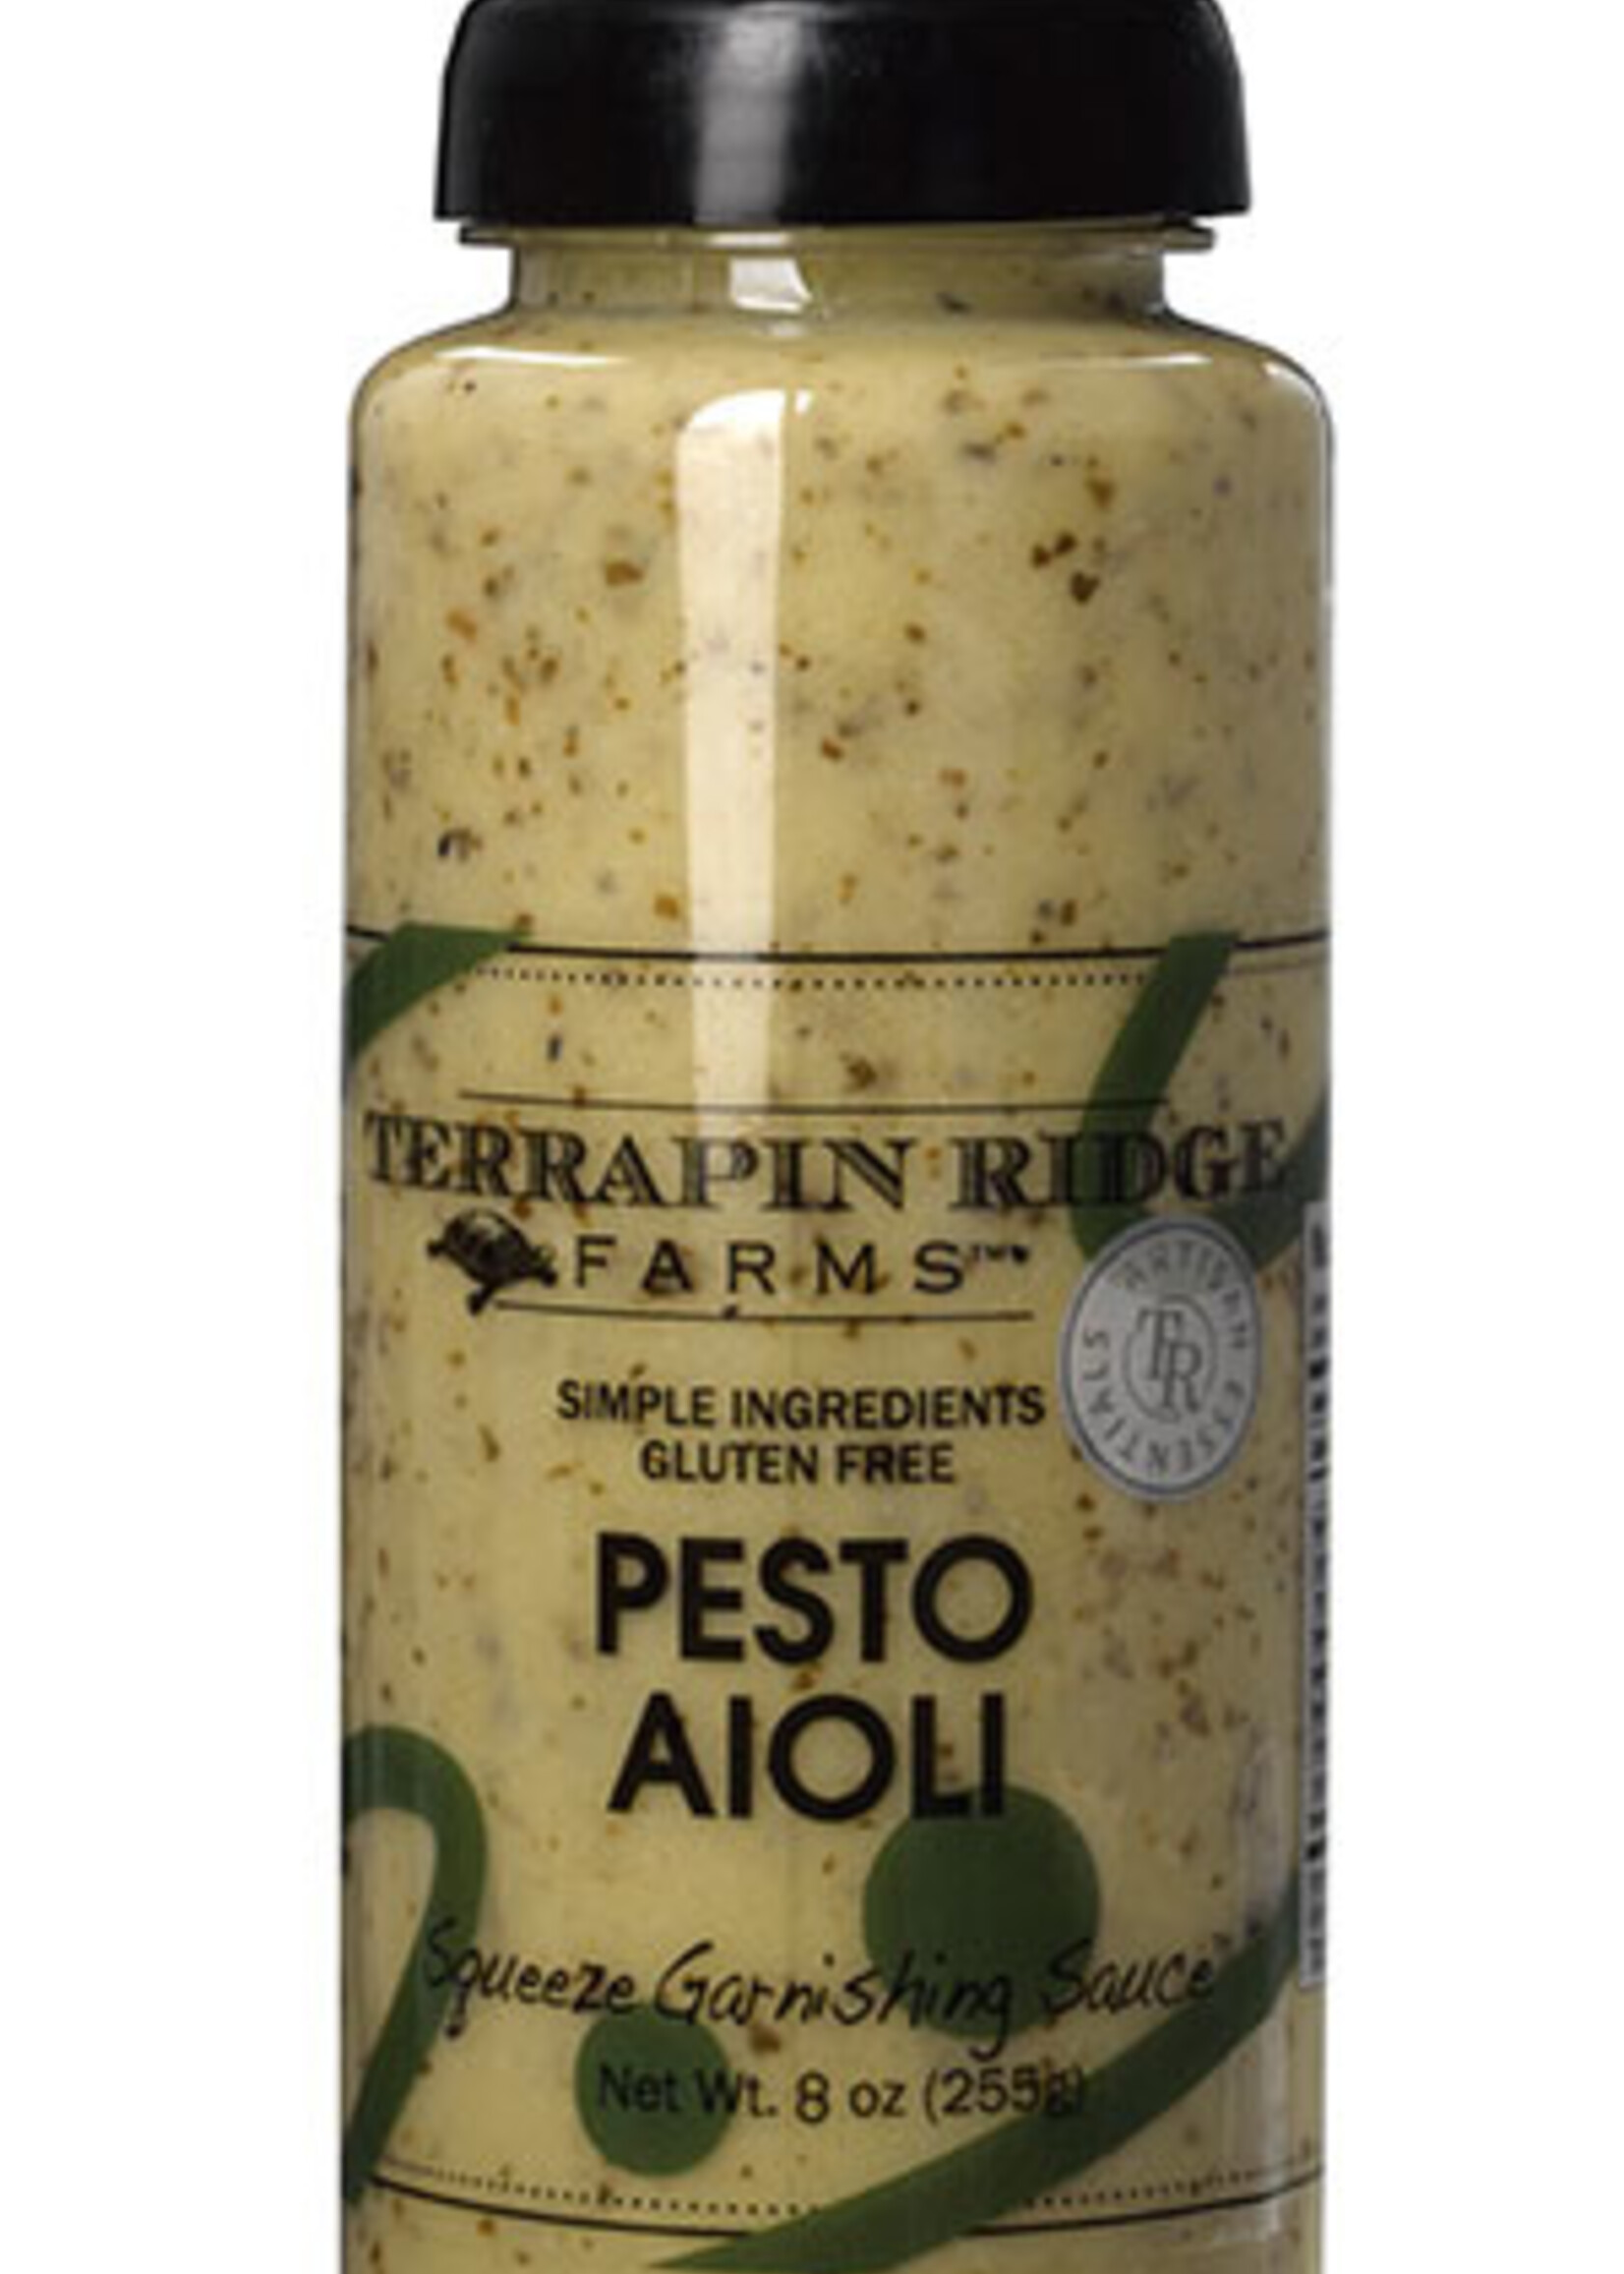 Terrapin Ridge Farms Pesto Aioli Garnishing Squeeze